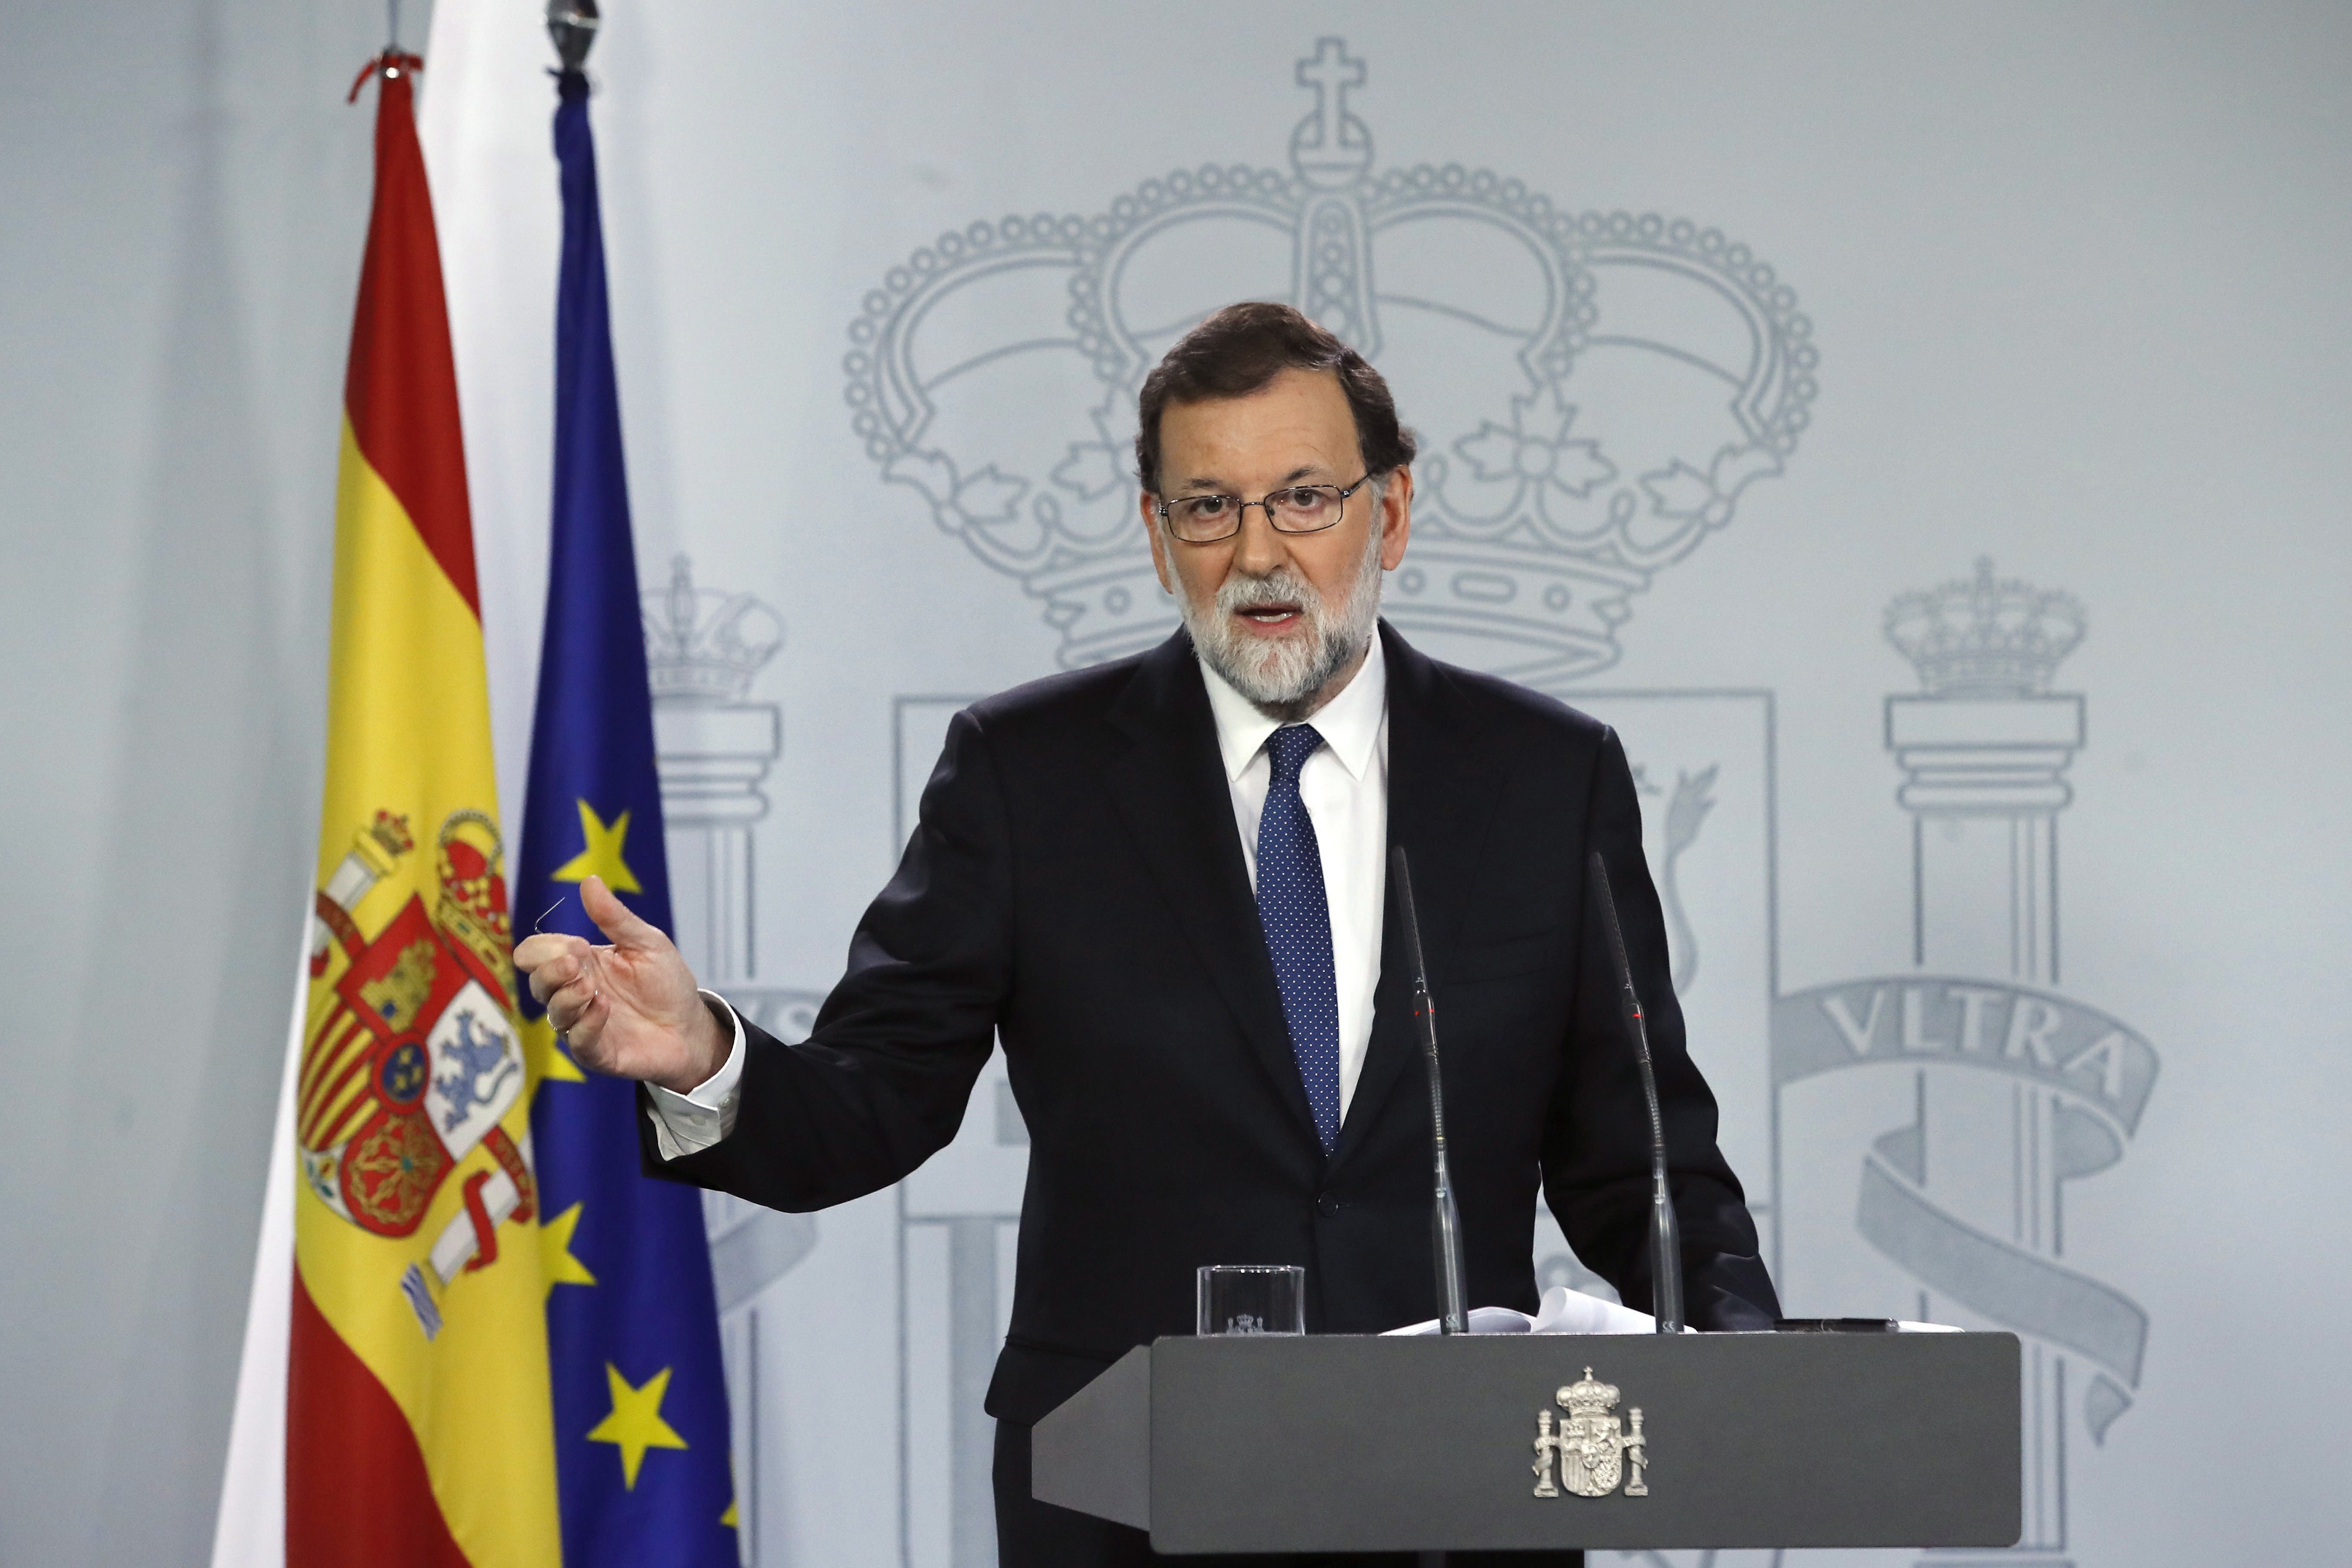 Políticos europeos cuestionan la democracia en el Estado español después del 155